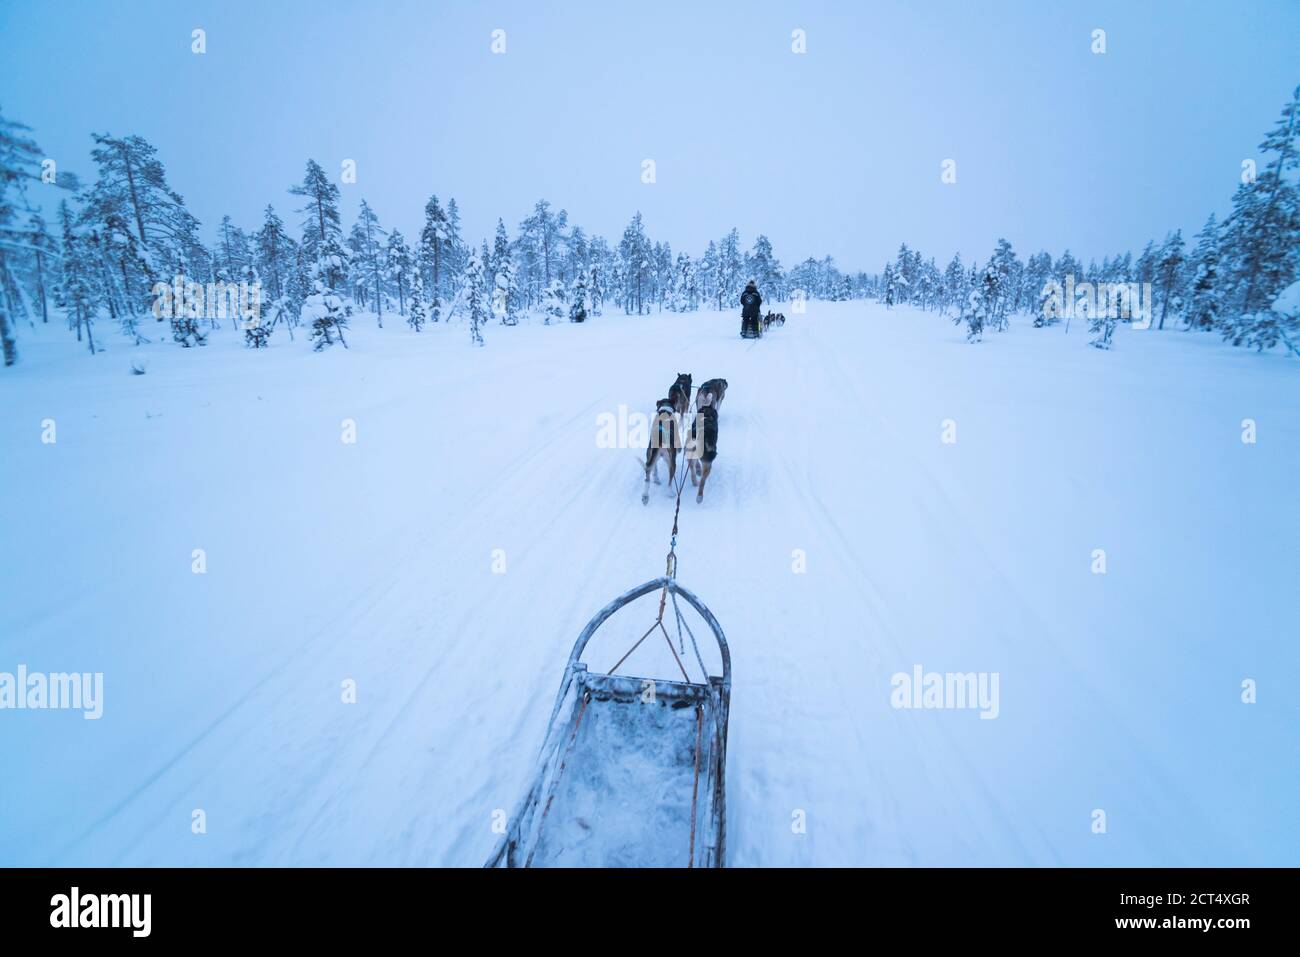 Aventure en traîneau à chiens Husky en vacances sur une glace gelée La neige couvrait le lac en hiver dans le paysage de Laponie dans Une forêt en Finlande Banque D'Images